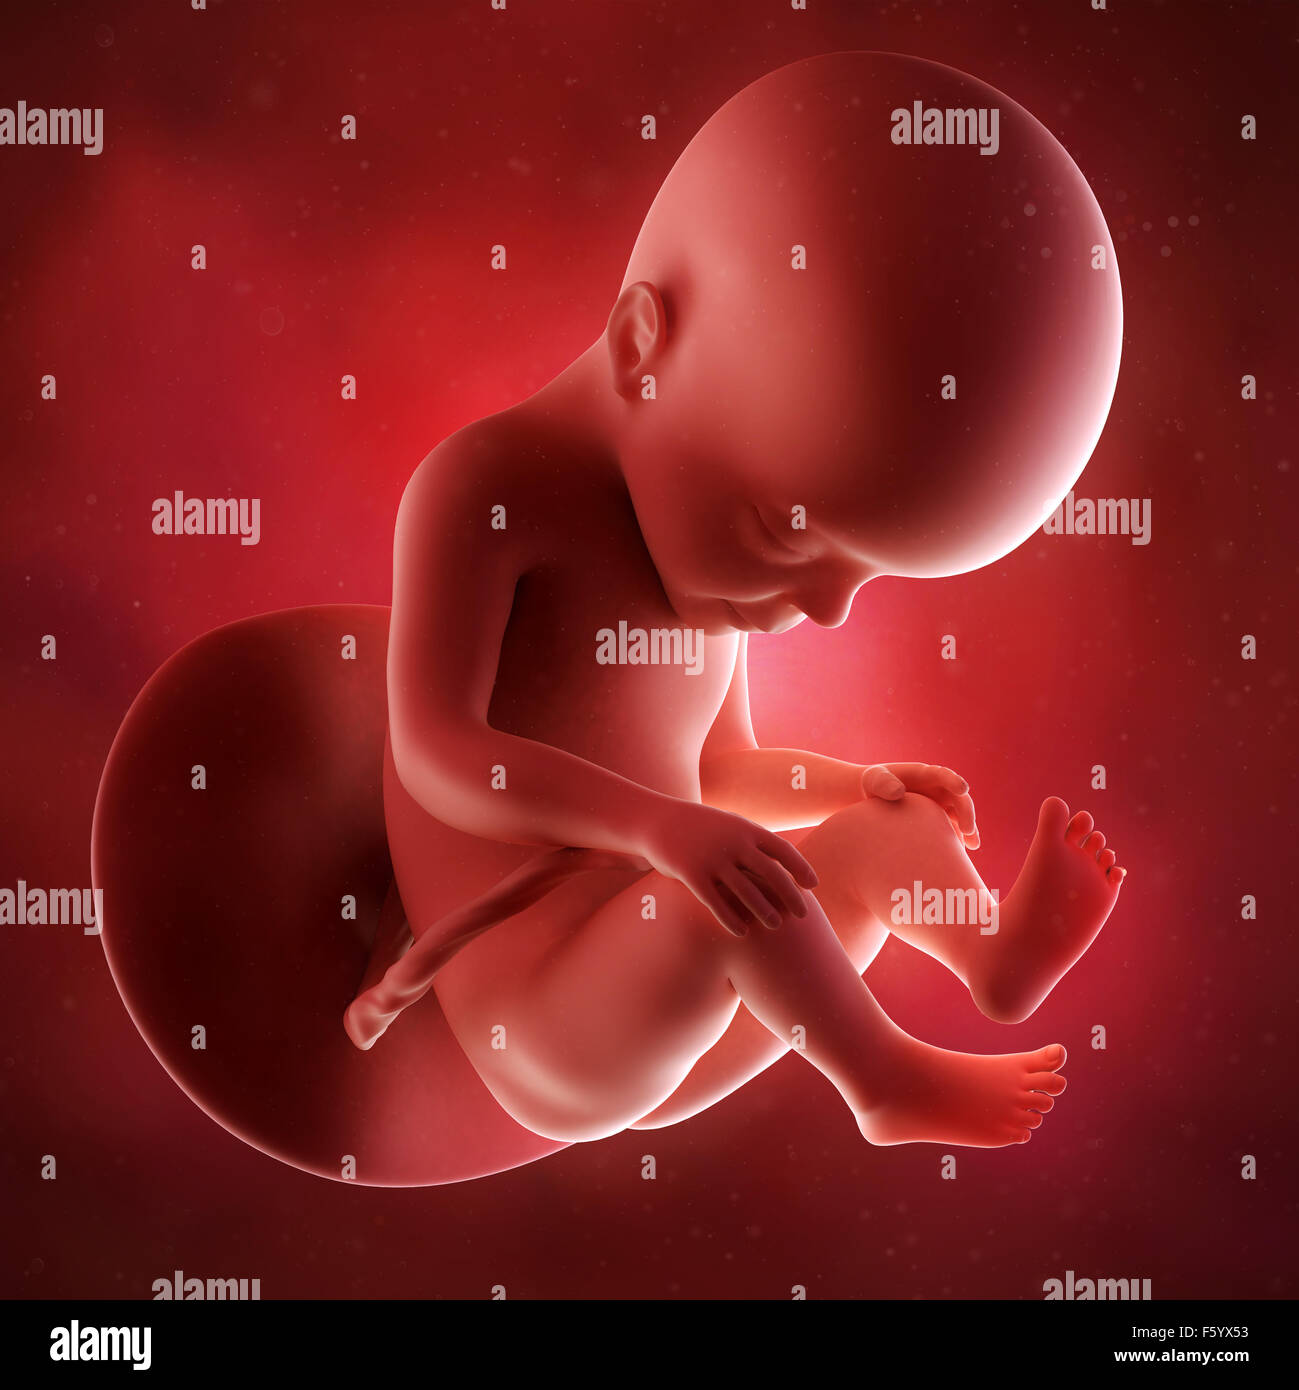 Précision médicale 3d illustration d'un foetus de la semaine 27 Banque D'Images